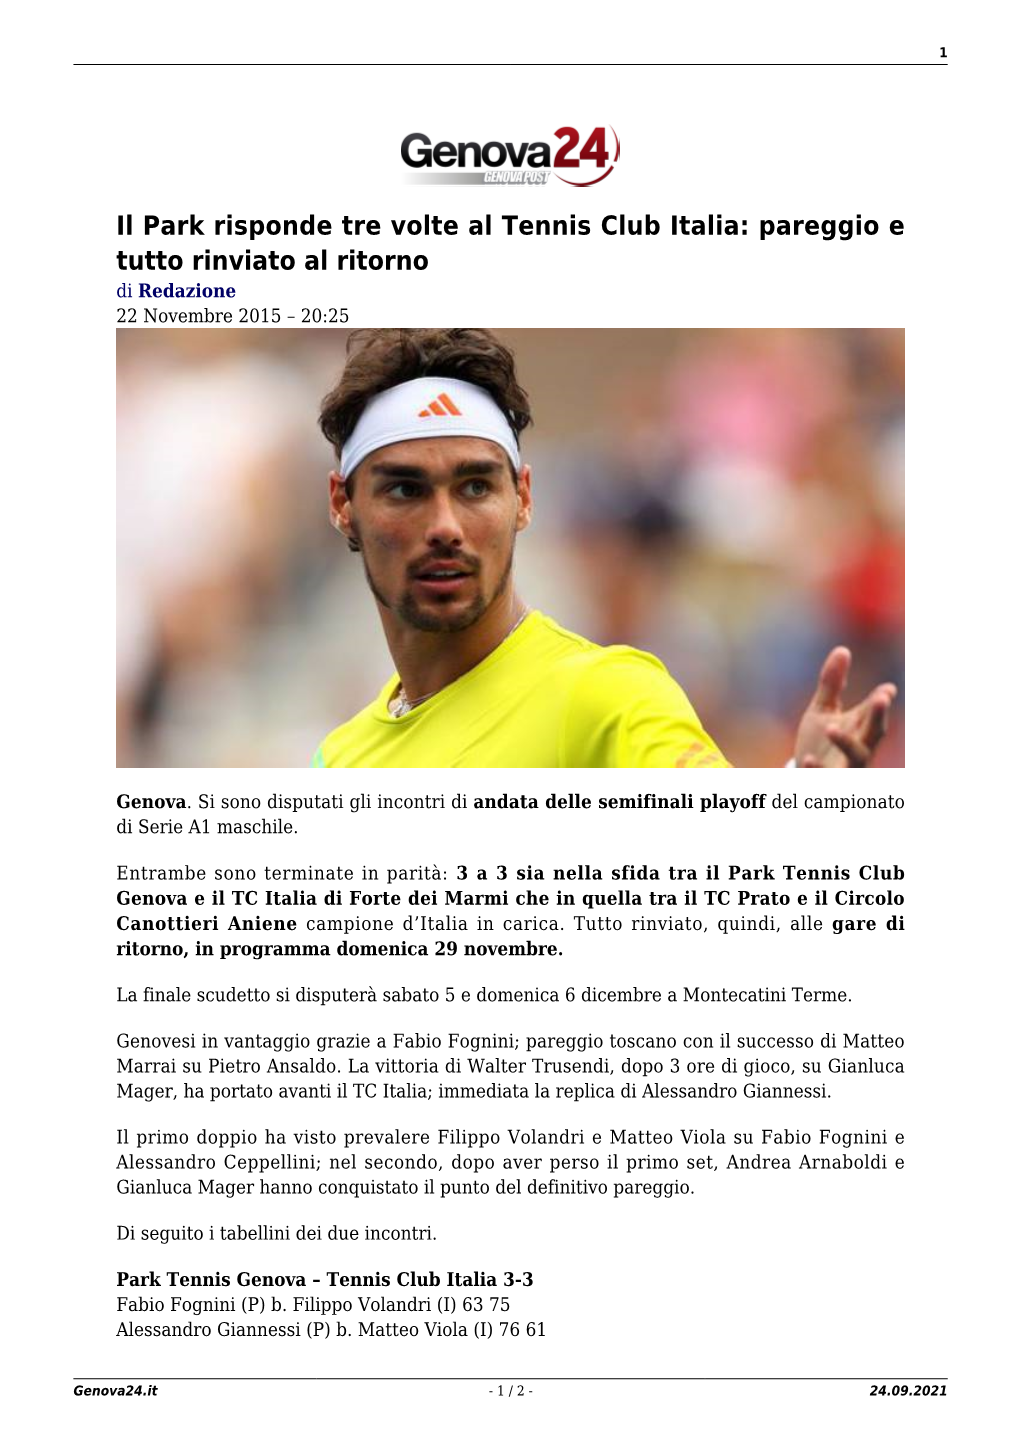 Il Park Risponde Tre Volte Al Tennis Club Italia: Pareggio E Tutto Rinviato Al Ritorno Di Redazione 22 Novembre 2015 – 20:25